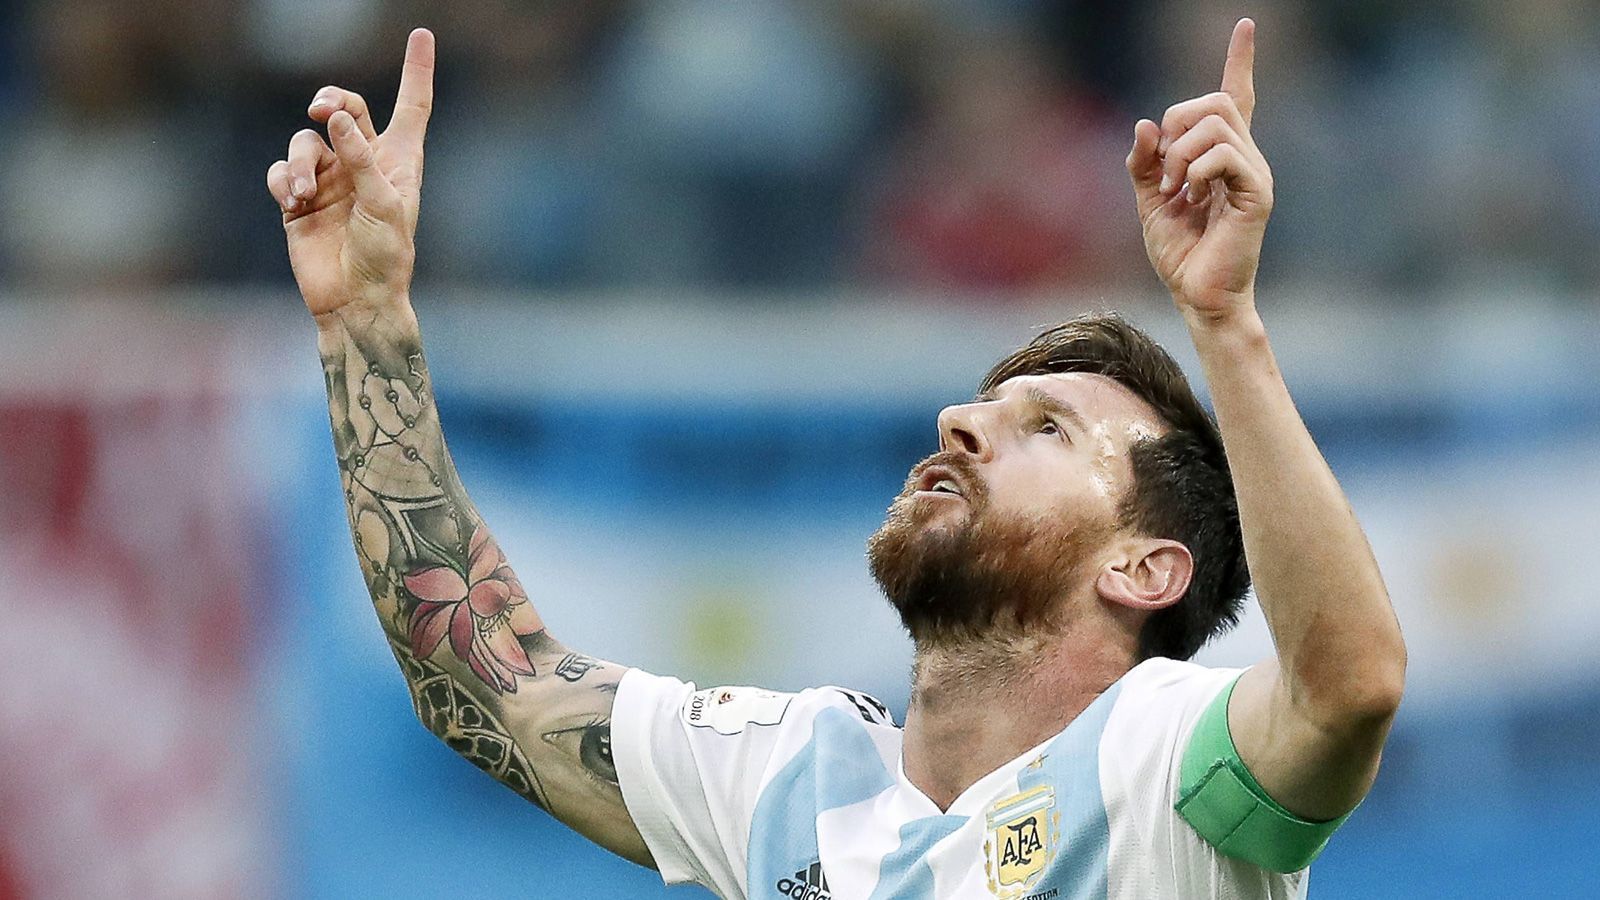 
                <strong>2. Platz: Argentinien</strong><br>
                Lionel Messi (Bild) fehlt der Triumph bei einer WM, um endgültig zu Diego Maradona als größter Fußballer Argentiniens aufschließen zu können. Das Turnier in Katar, seine fünfte WM, dürfte die letzte Chance sein. Und die Aussichten sind gar nicht so schlecht. Denn die Argentinier treten mit einer ausgeglichenen, starken Truppe an, die nur schwer zu schlagen ist.
              